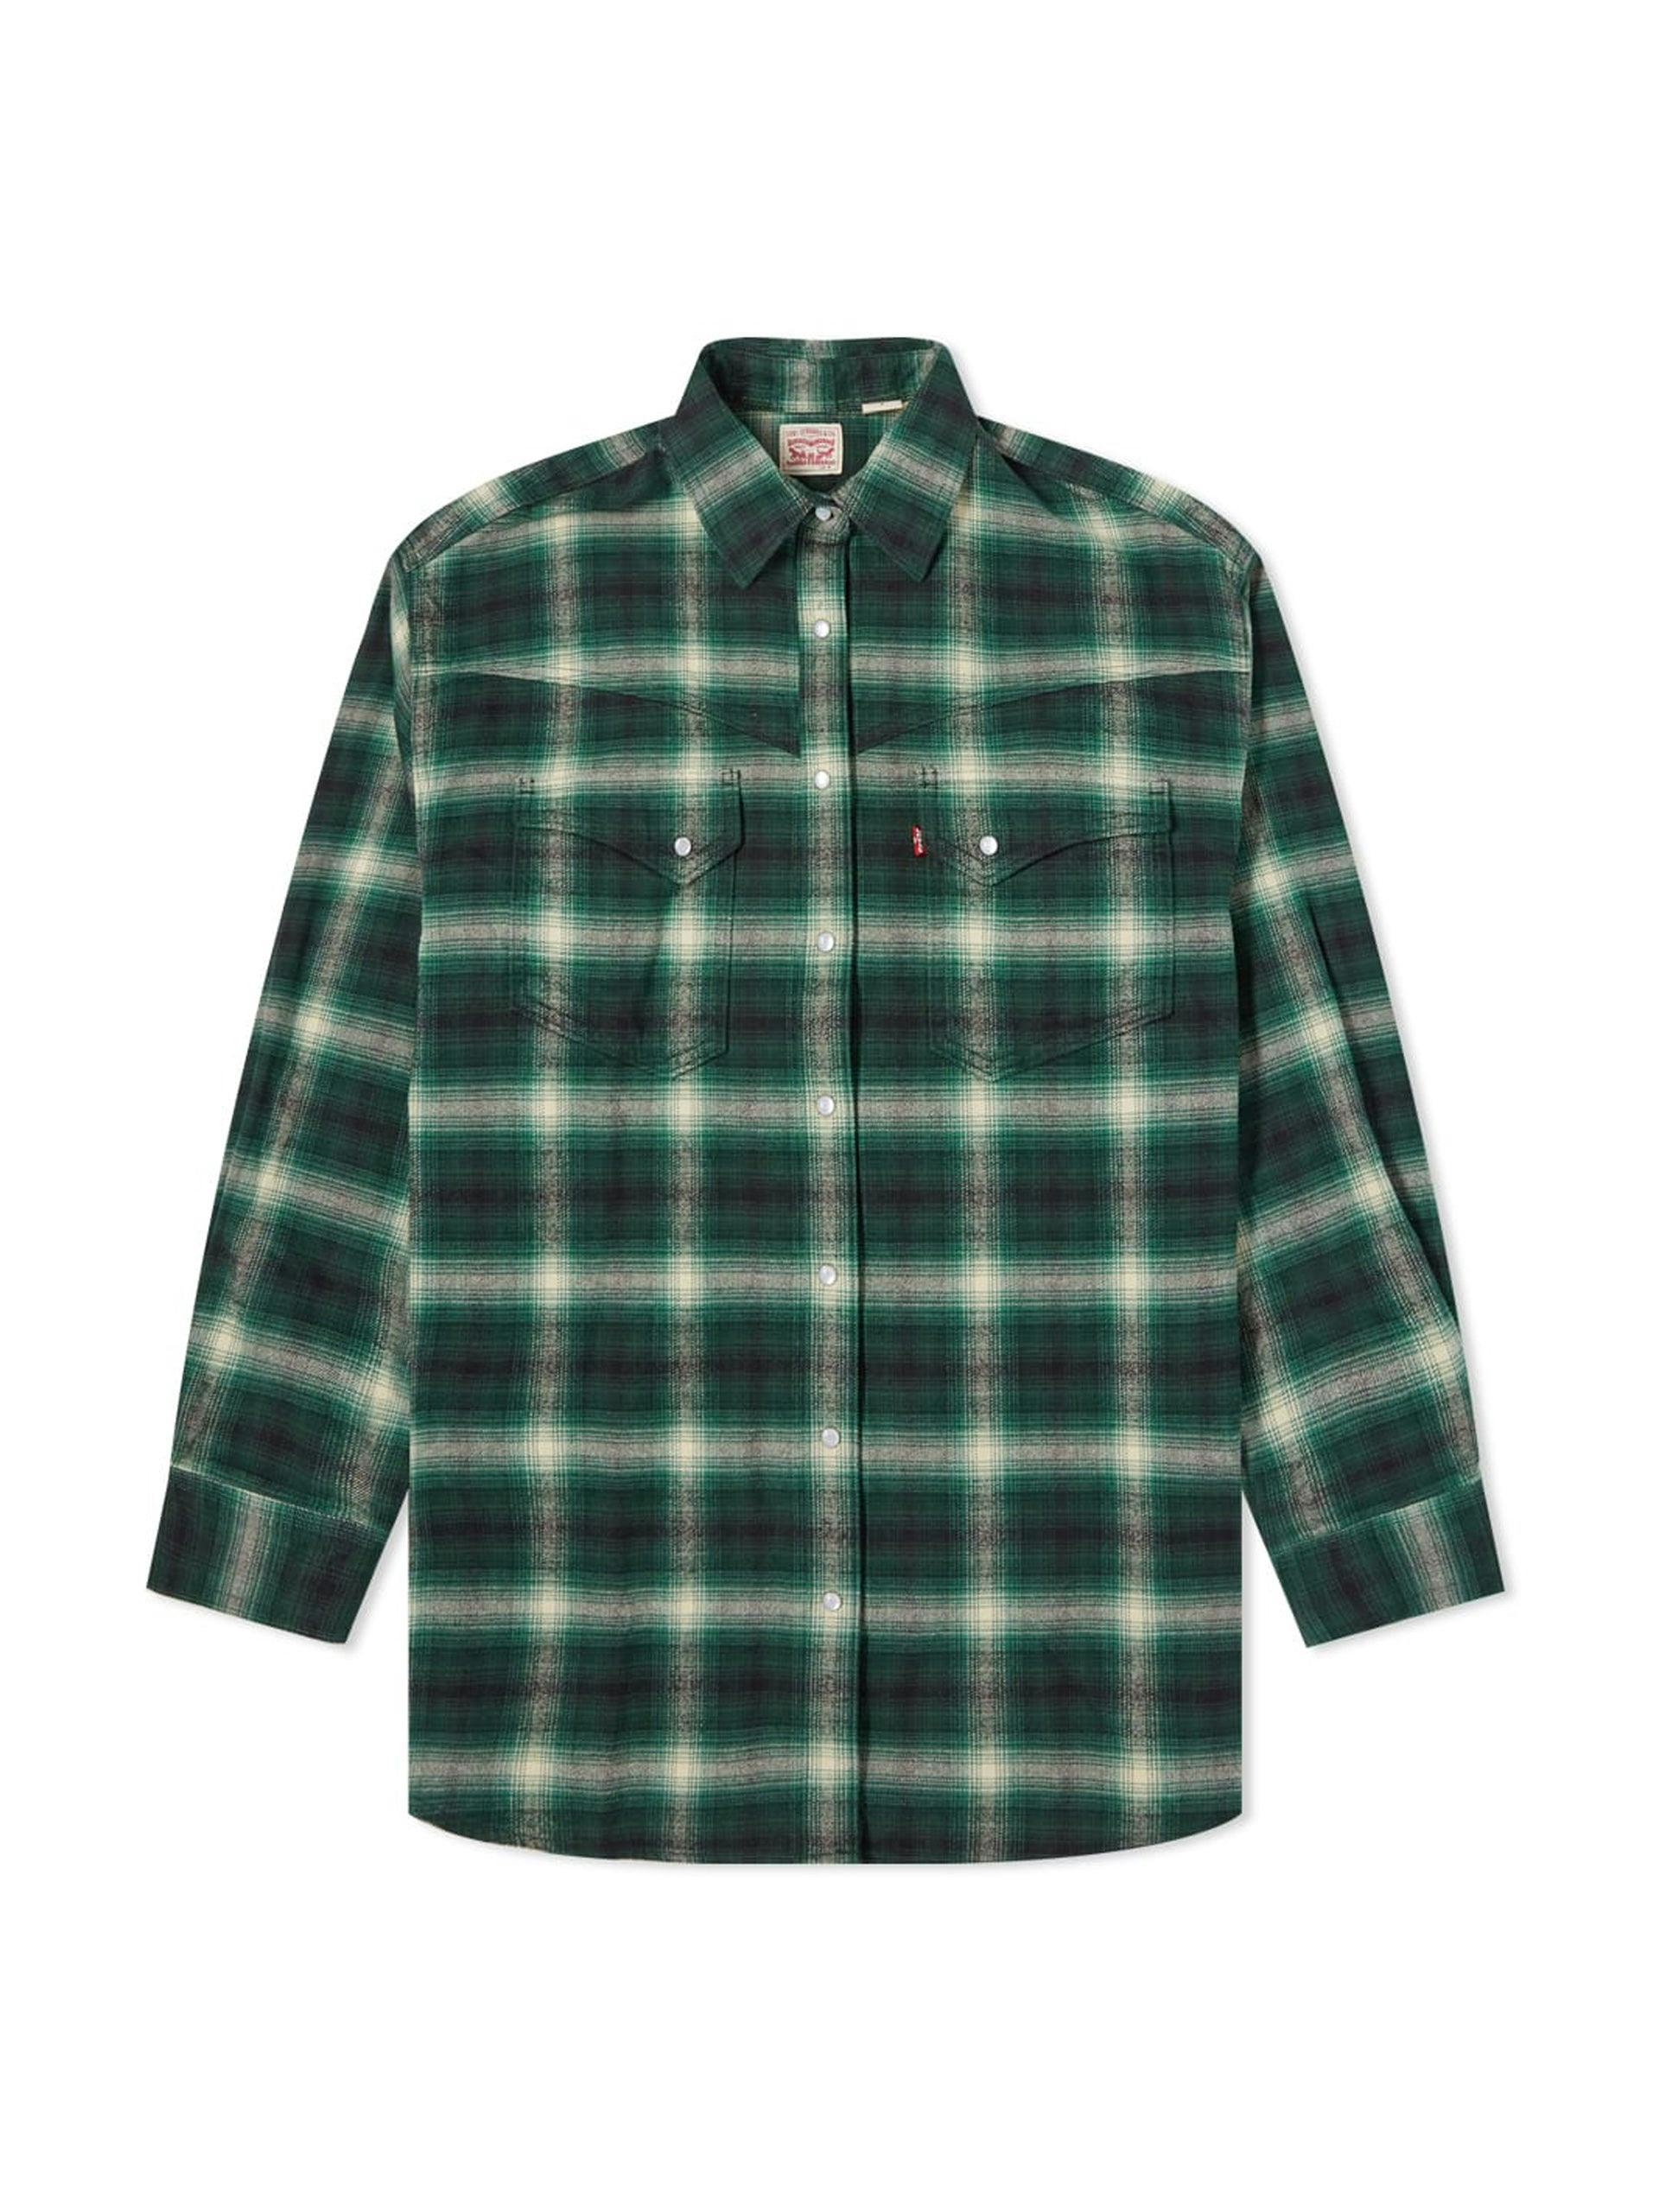 Forest green plaid shirt